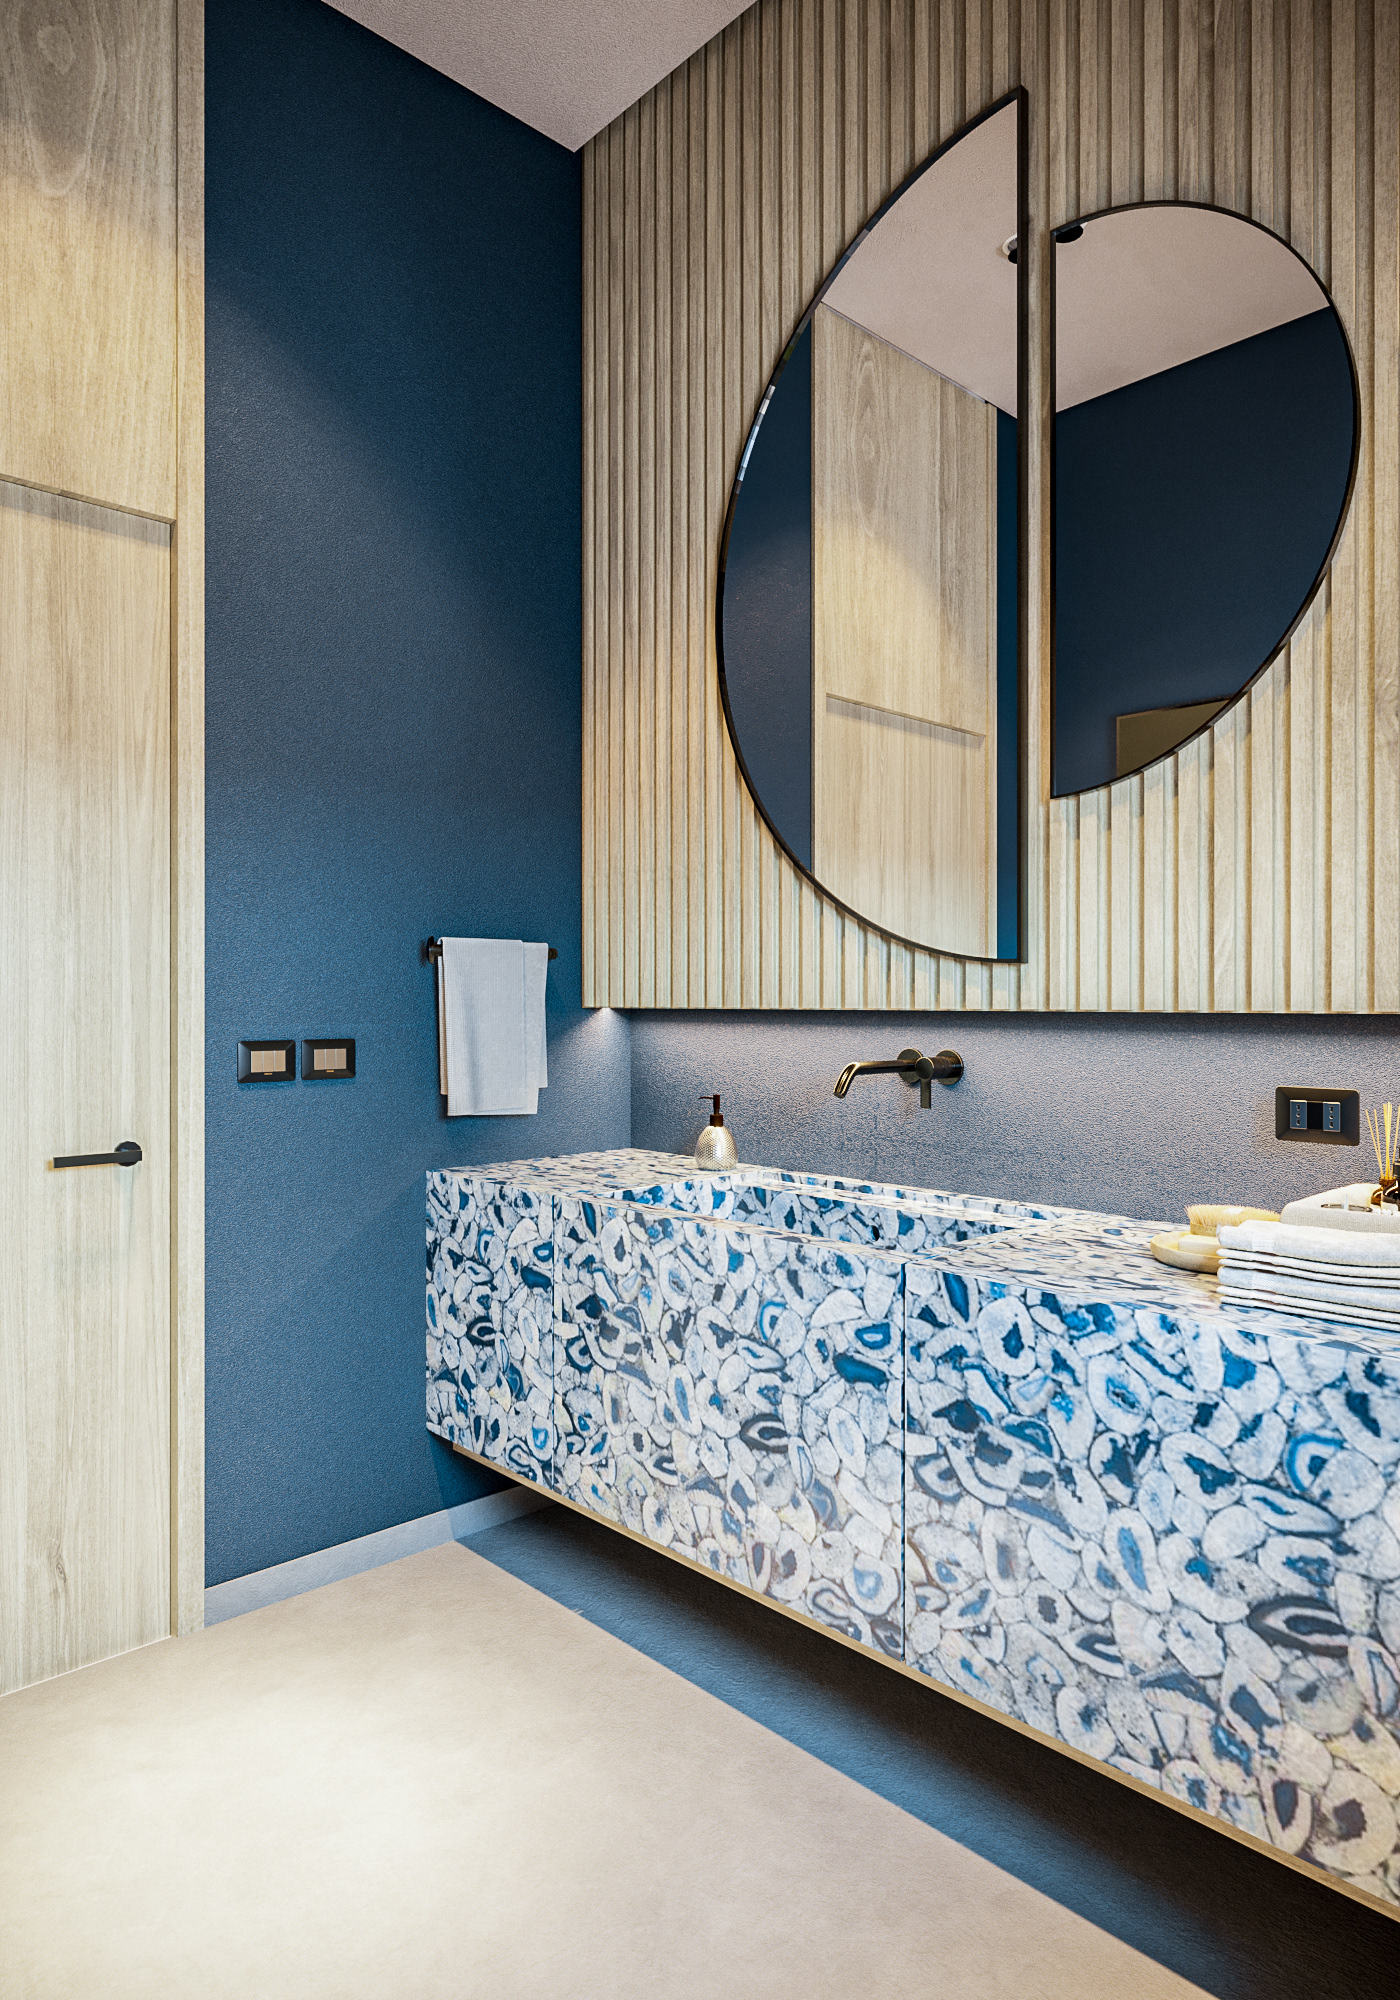 CGI architecture visualization Render interior design  blue corona bathroom